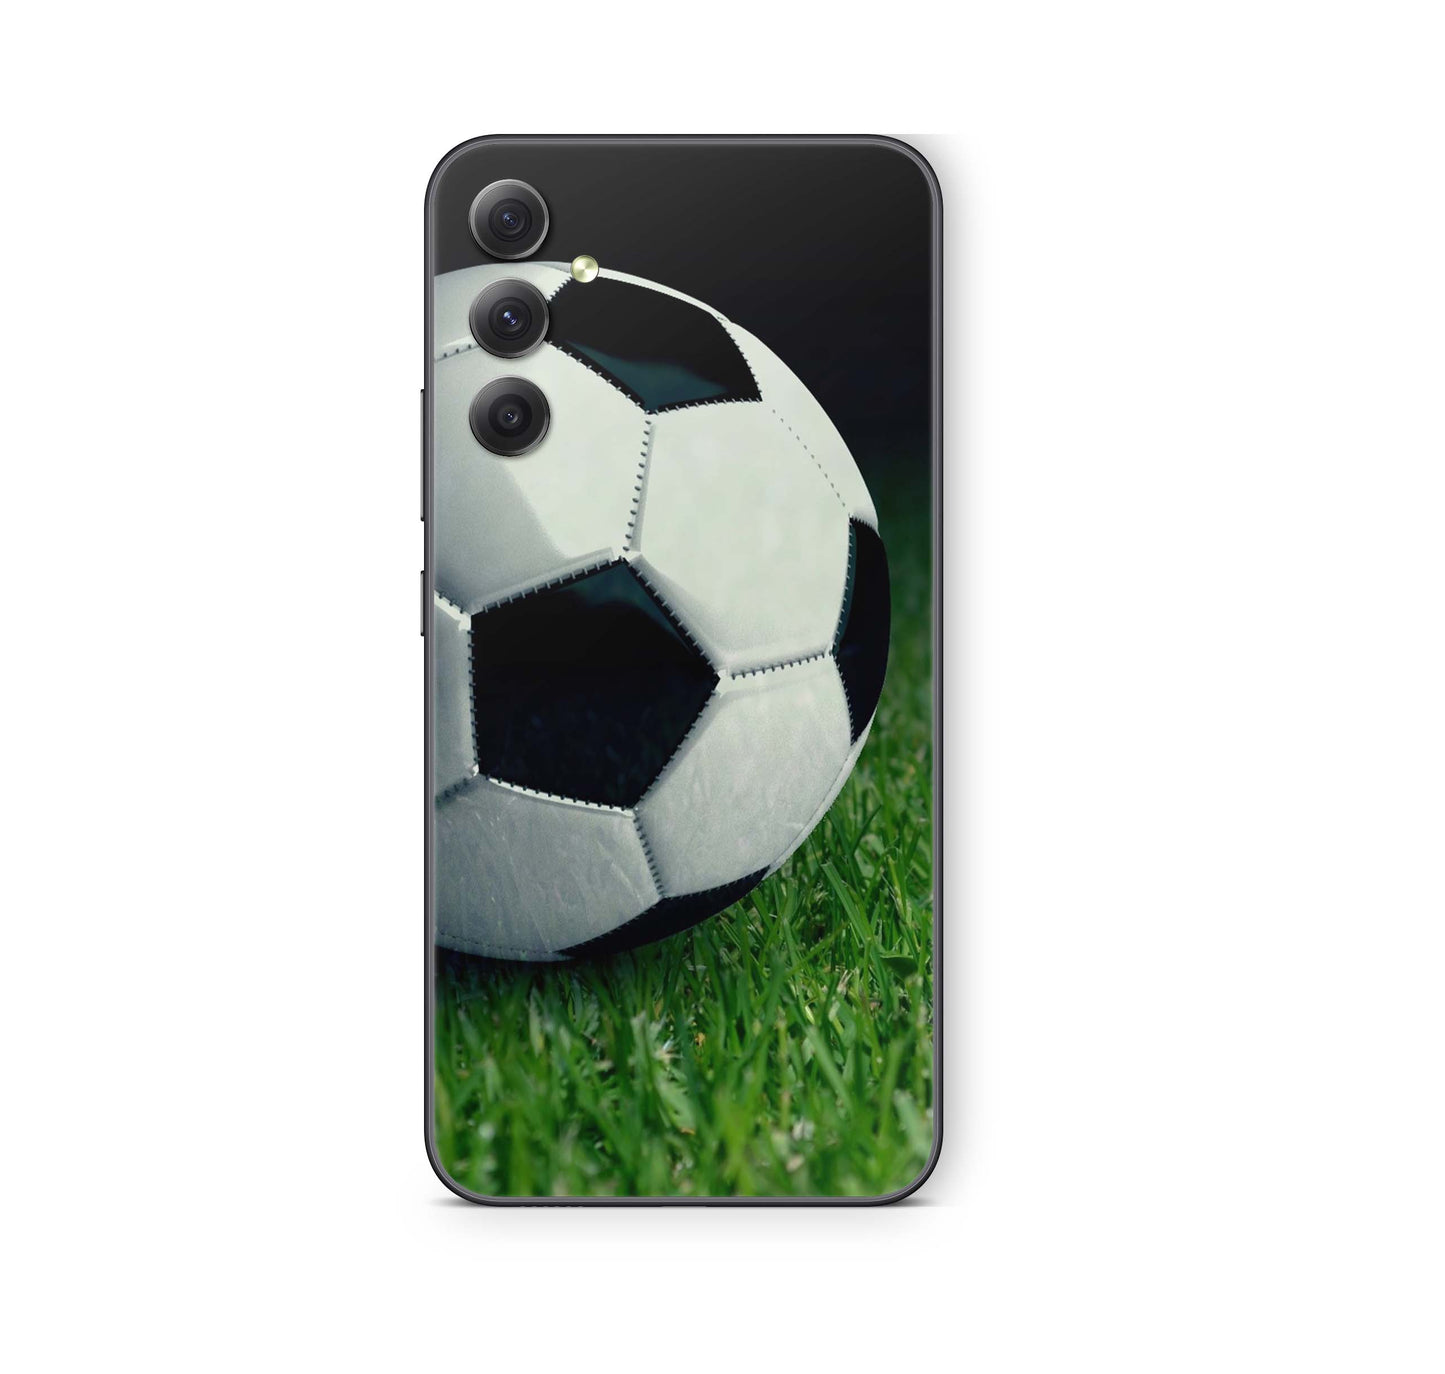 Samsung Galaxy S23 FE Skin Schutzfolie Aufkleber Skins Design Soccer Elektronik-Sticker & -Aufkleber skins4u   